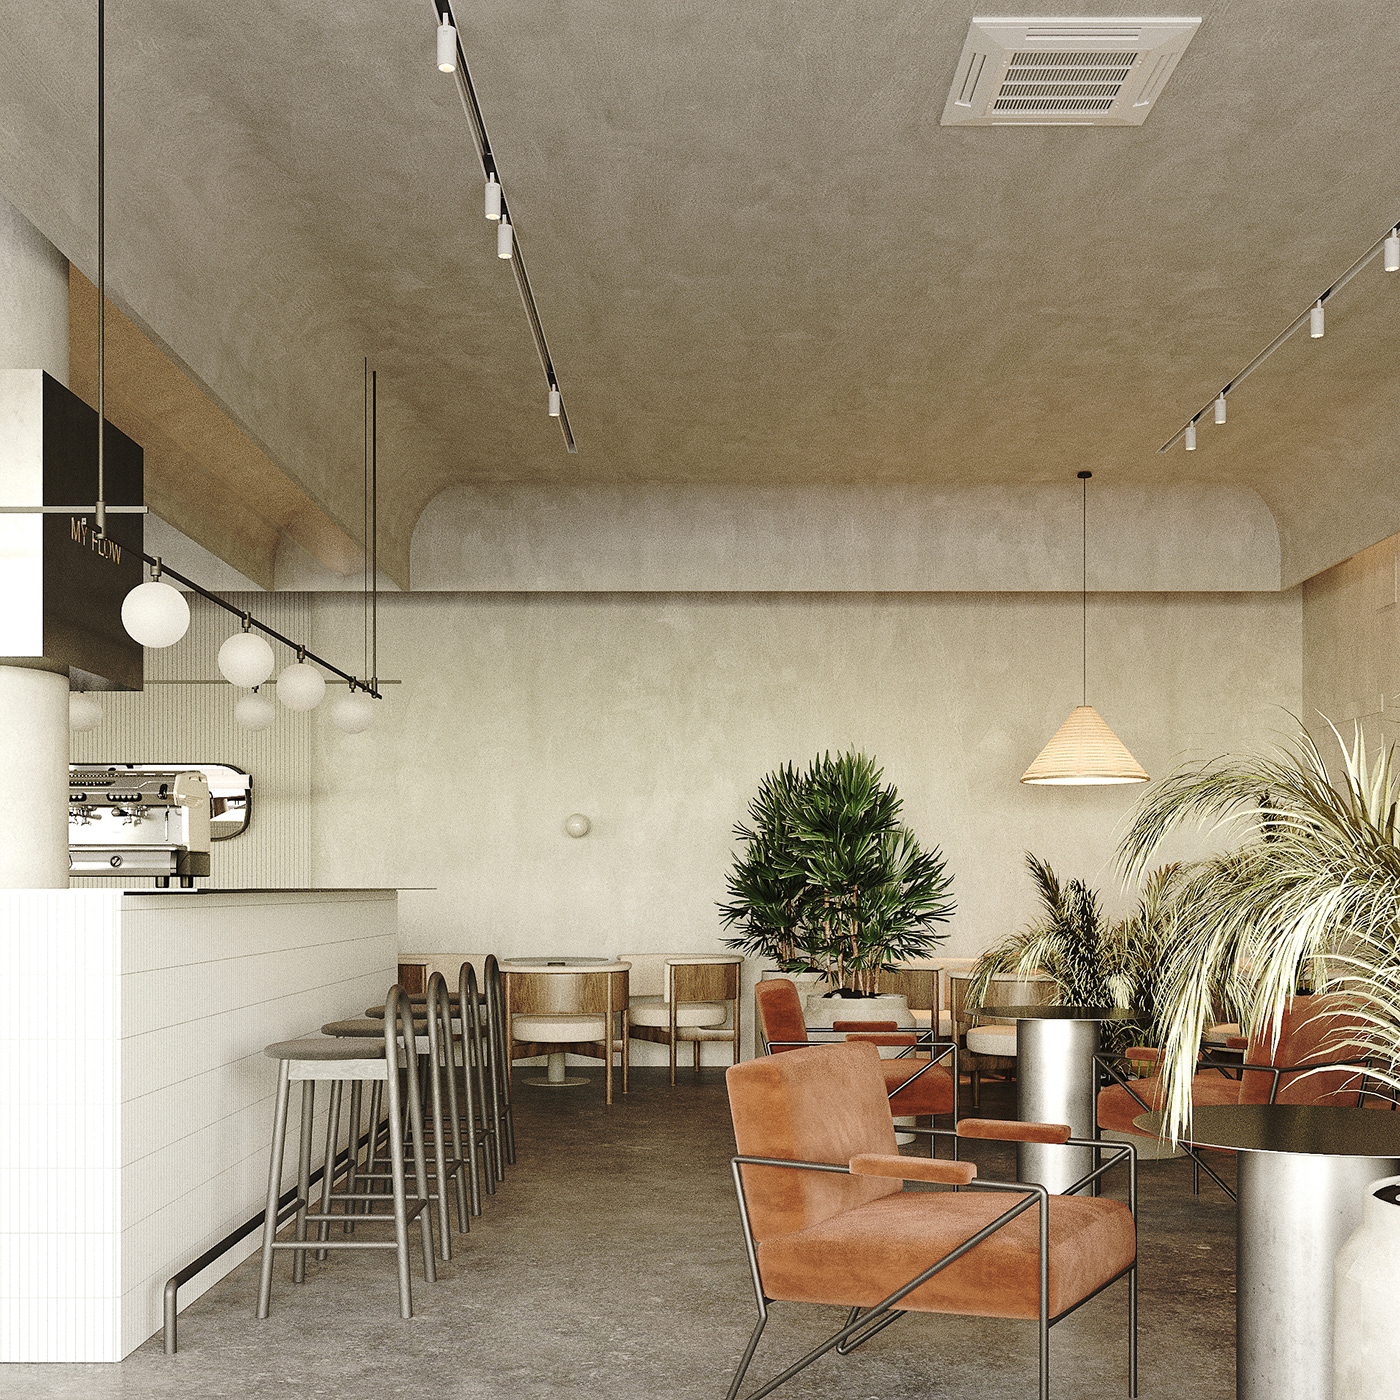 archviz Cafe design cafe interior cafe interior design CGI coronarenderer modern cafe interior restaurant design restaurant interior